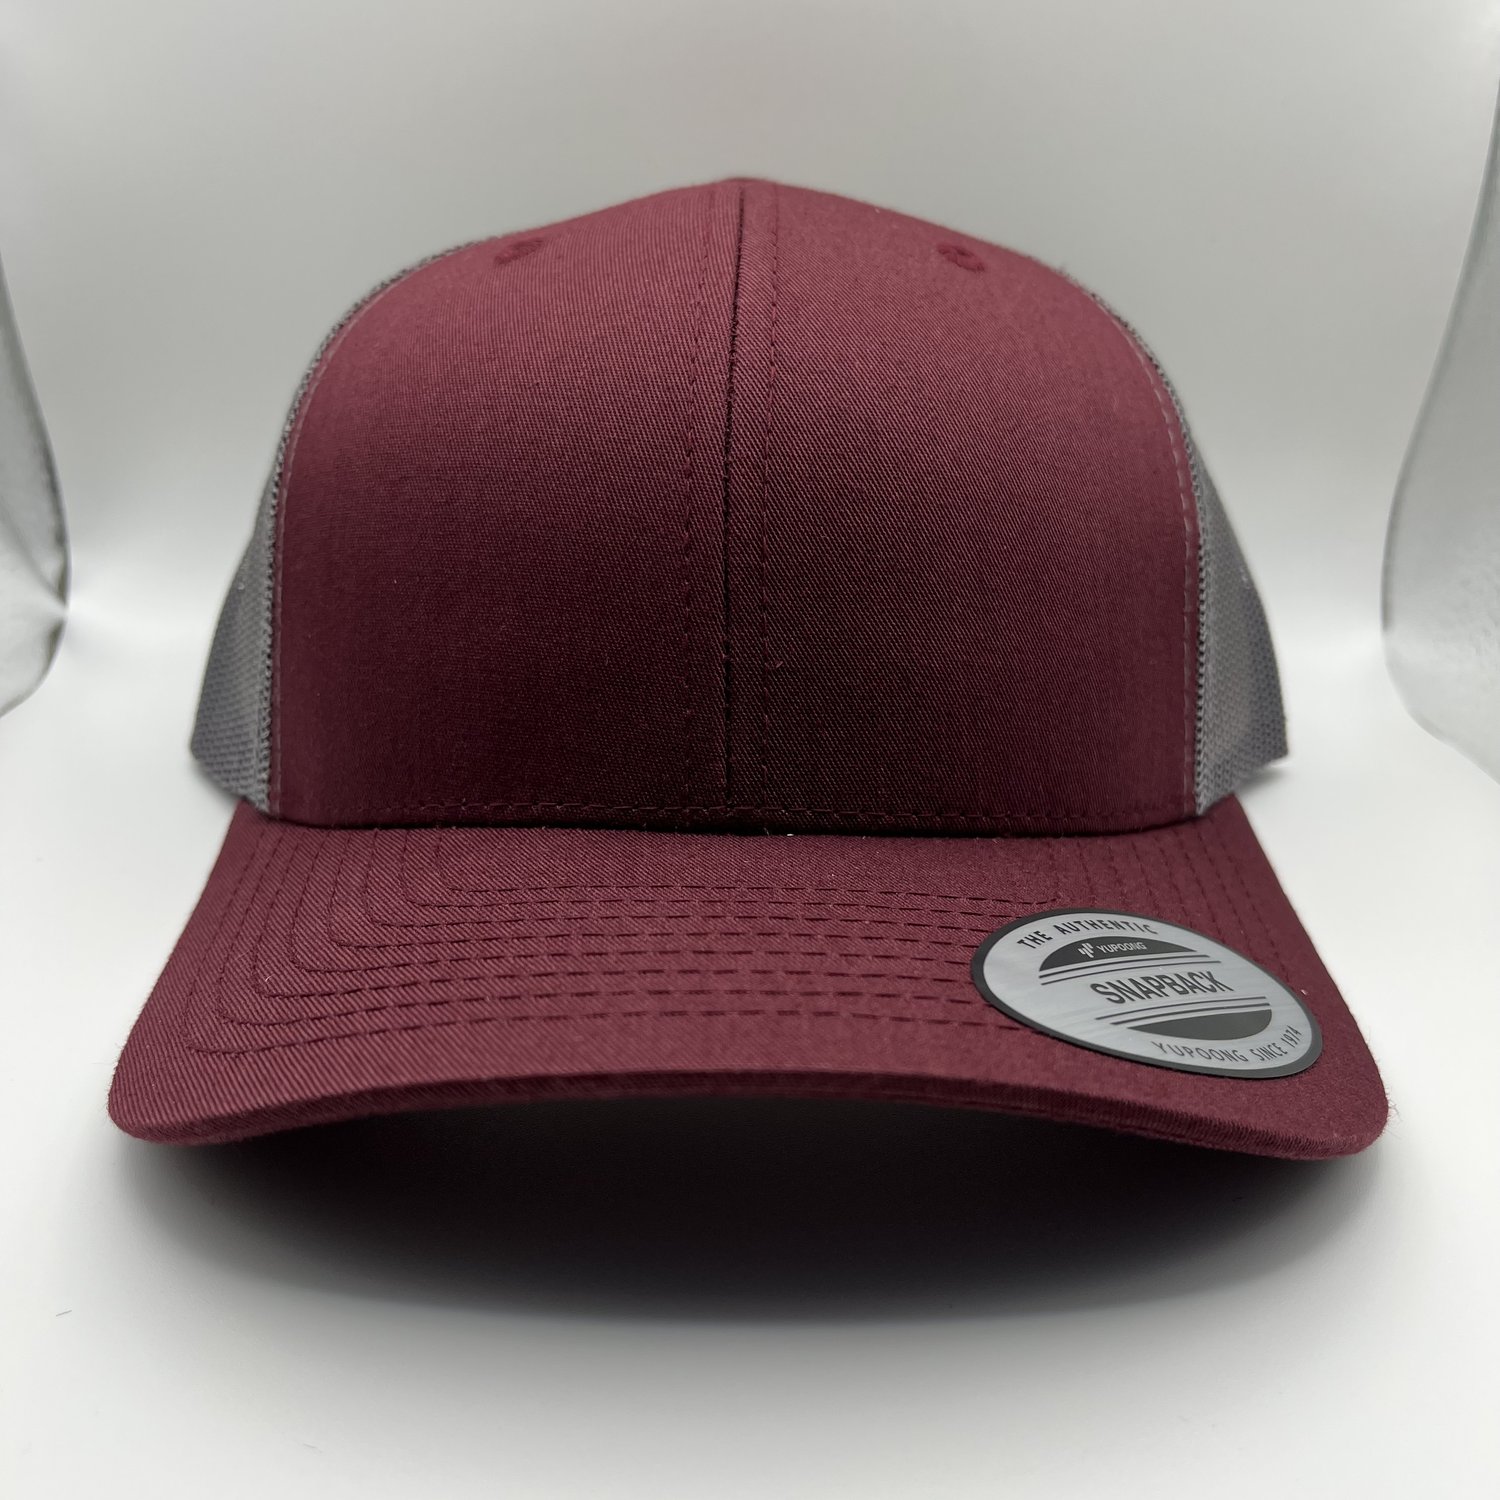 Kapps - Custom Hat Maker